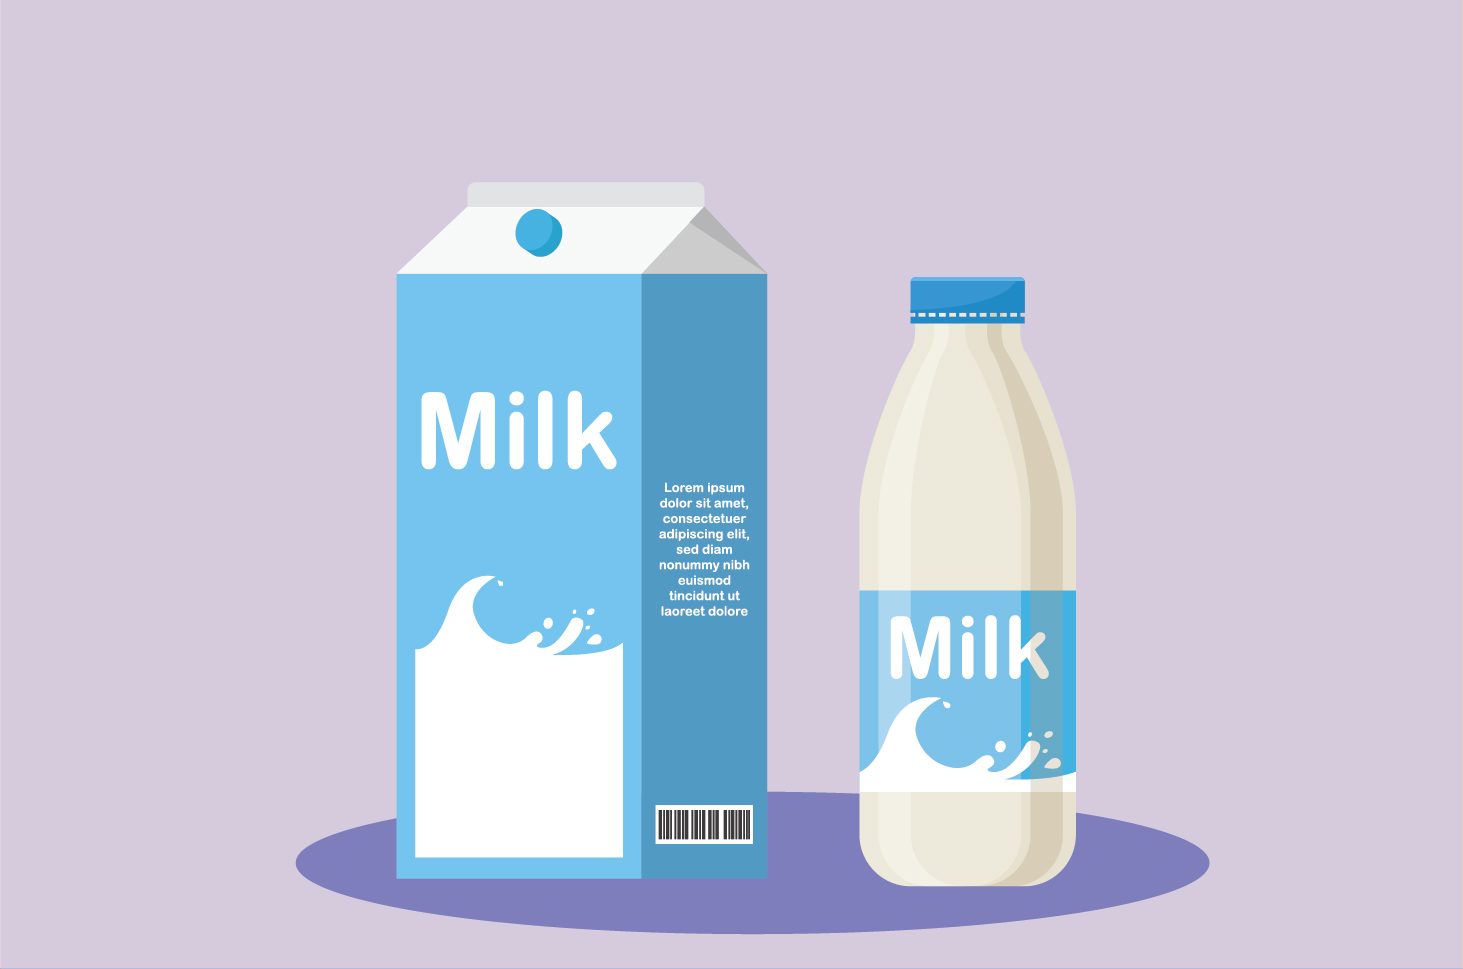 النساء الحوامل المصابات بحساسية الحليب ، إليك 8 أطعمة بديلة صحيحة